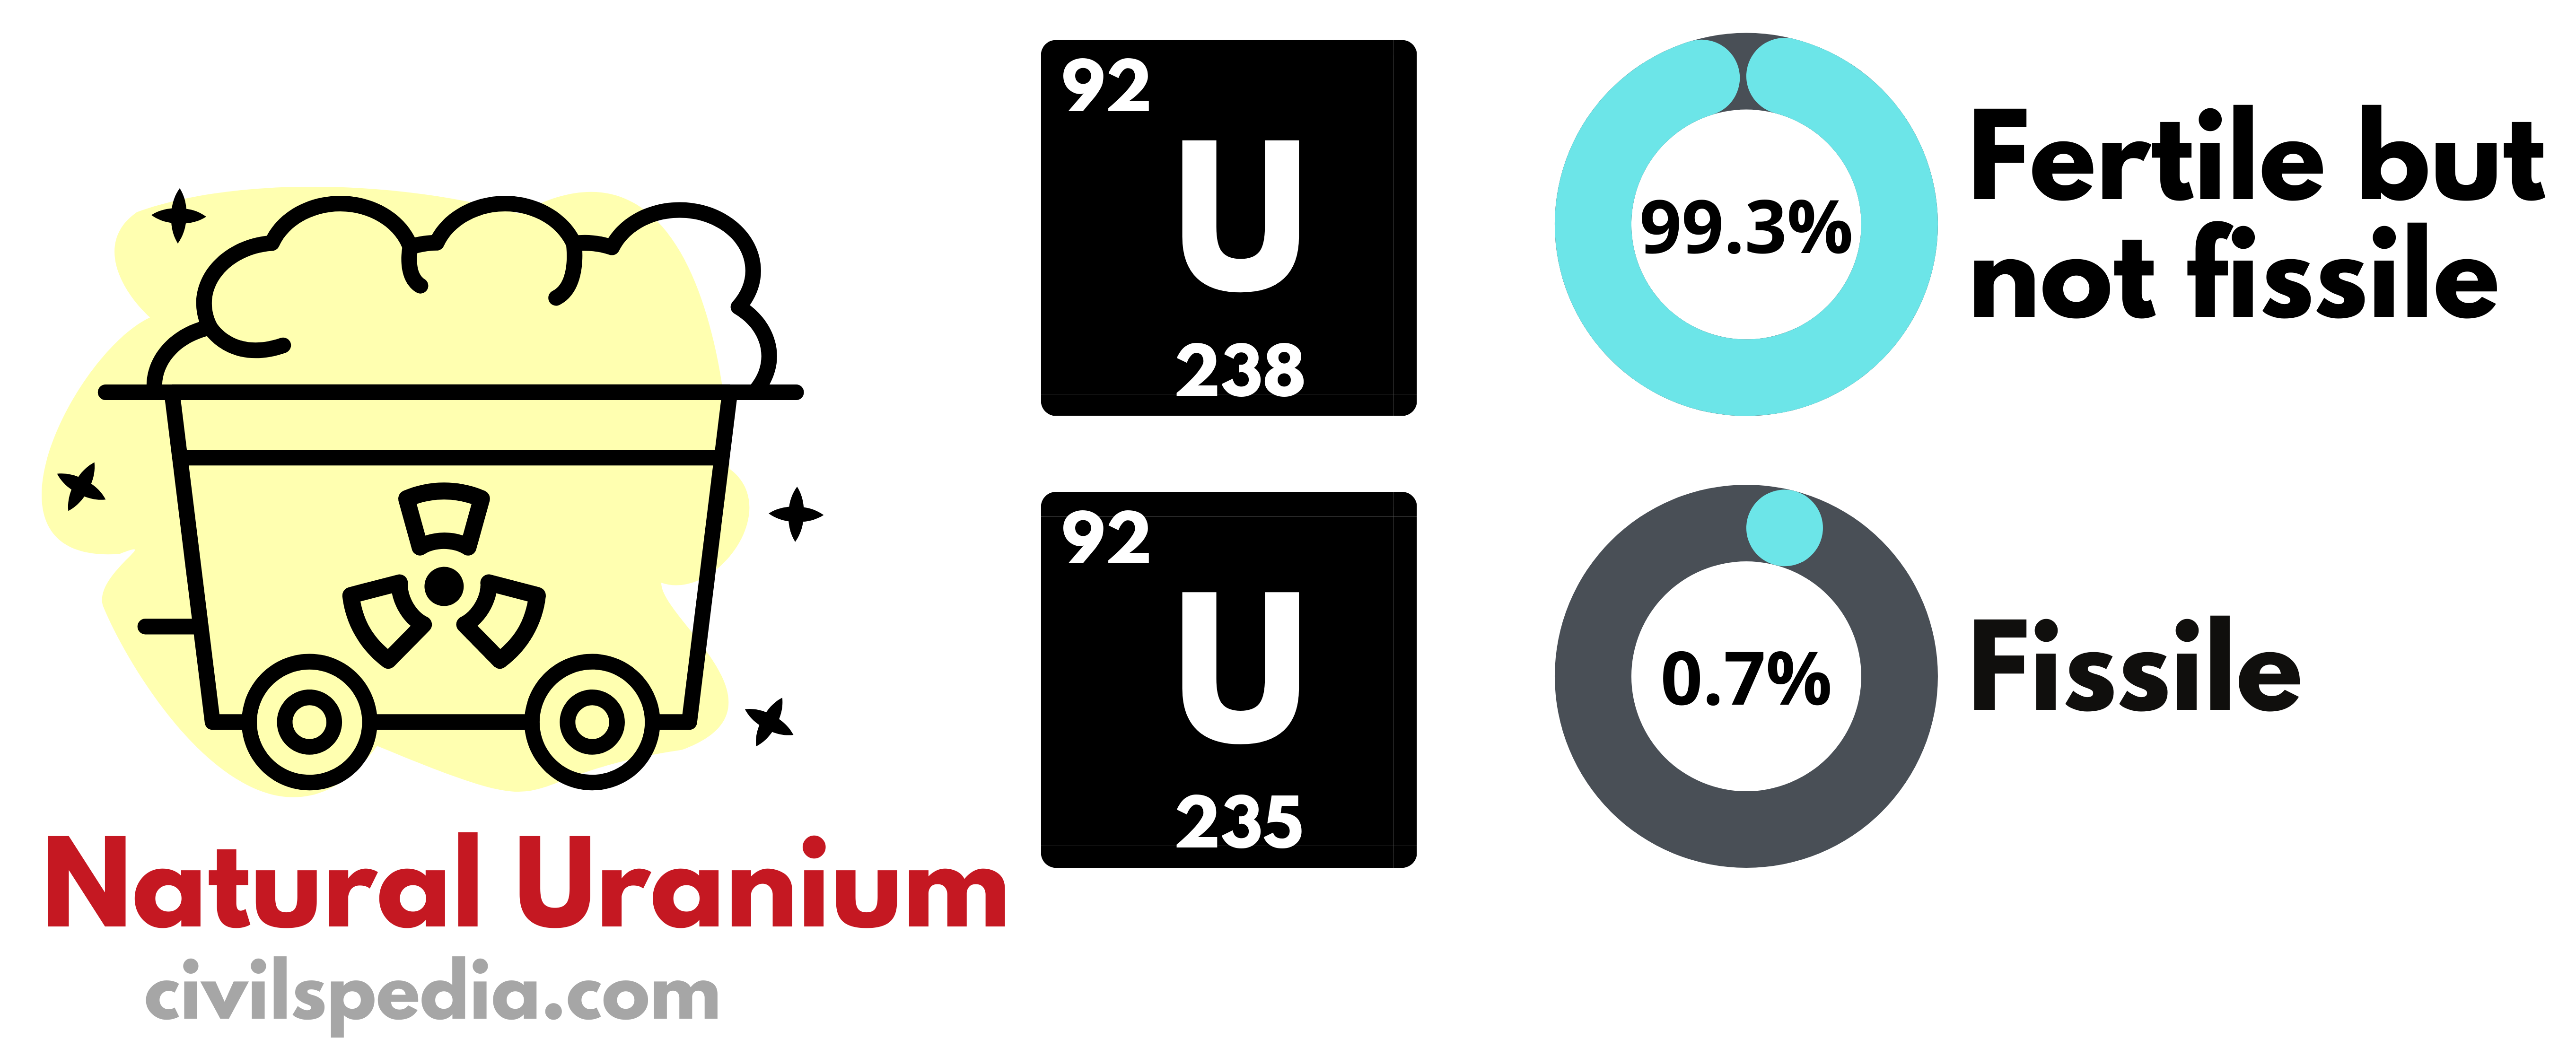 Natural Uranium - composition